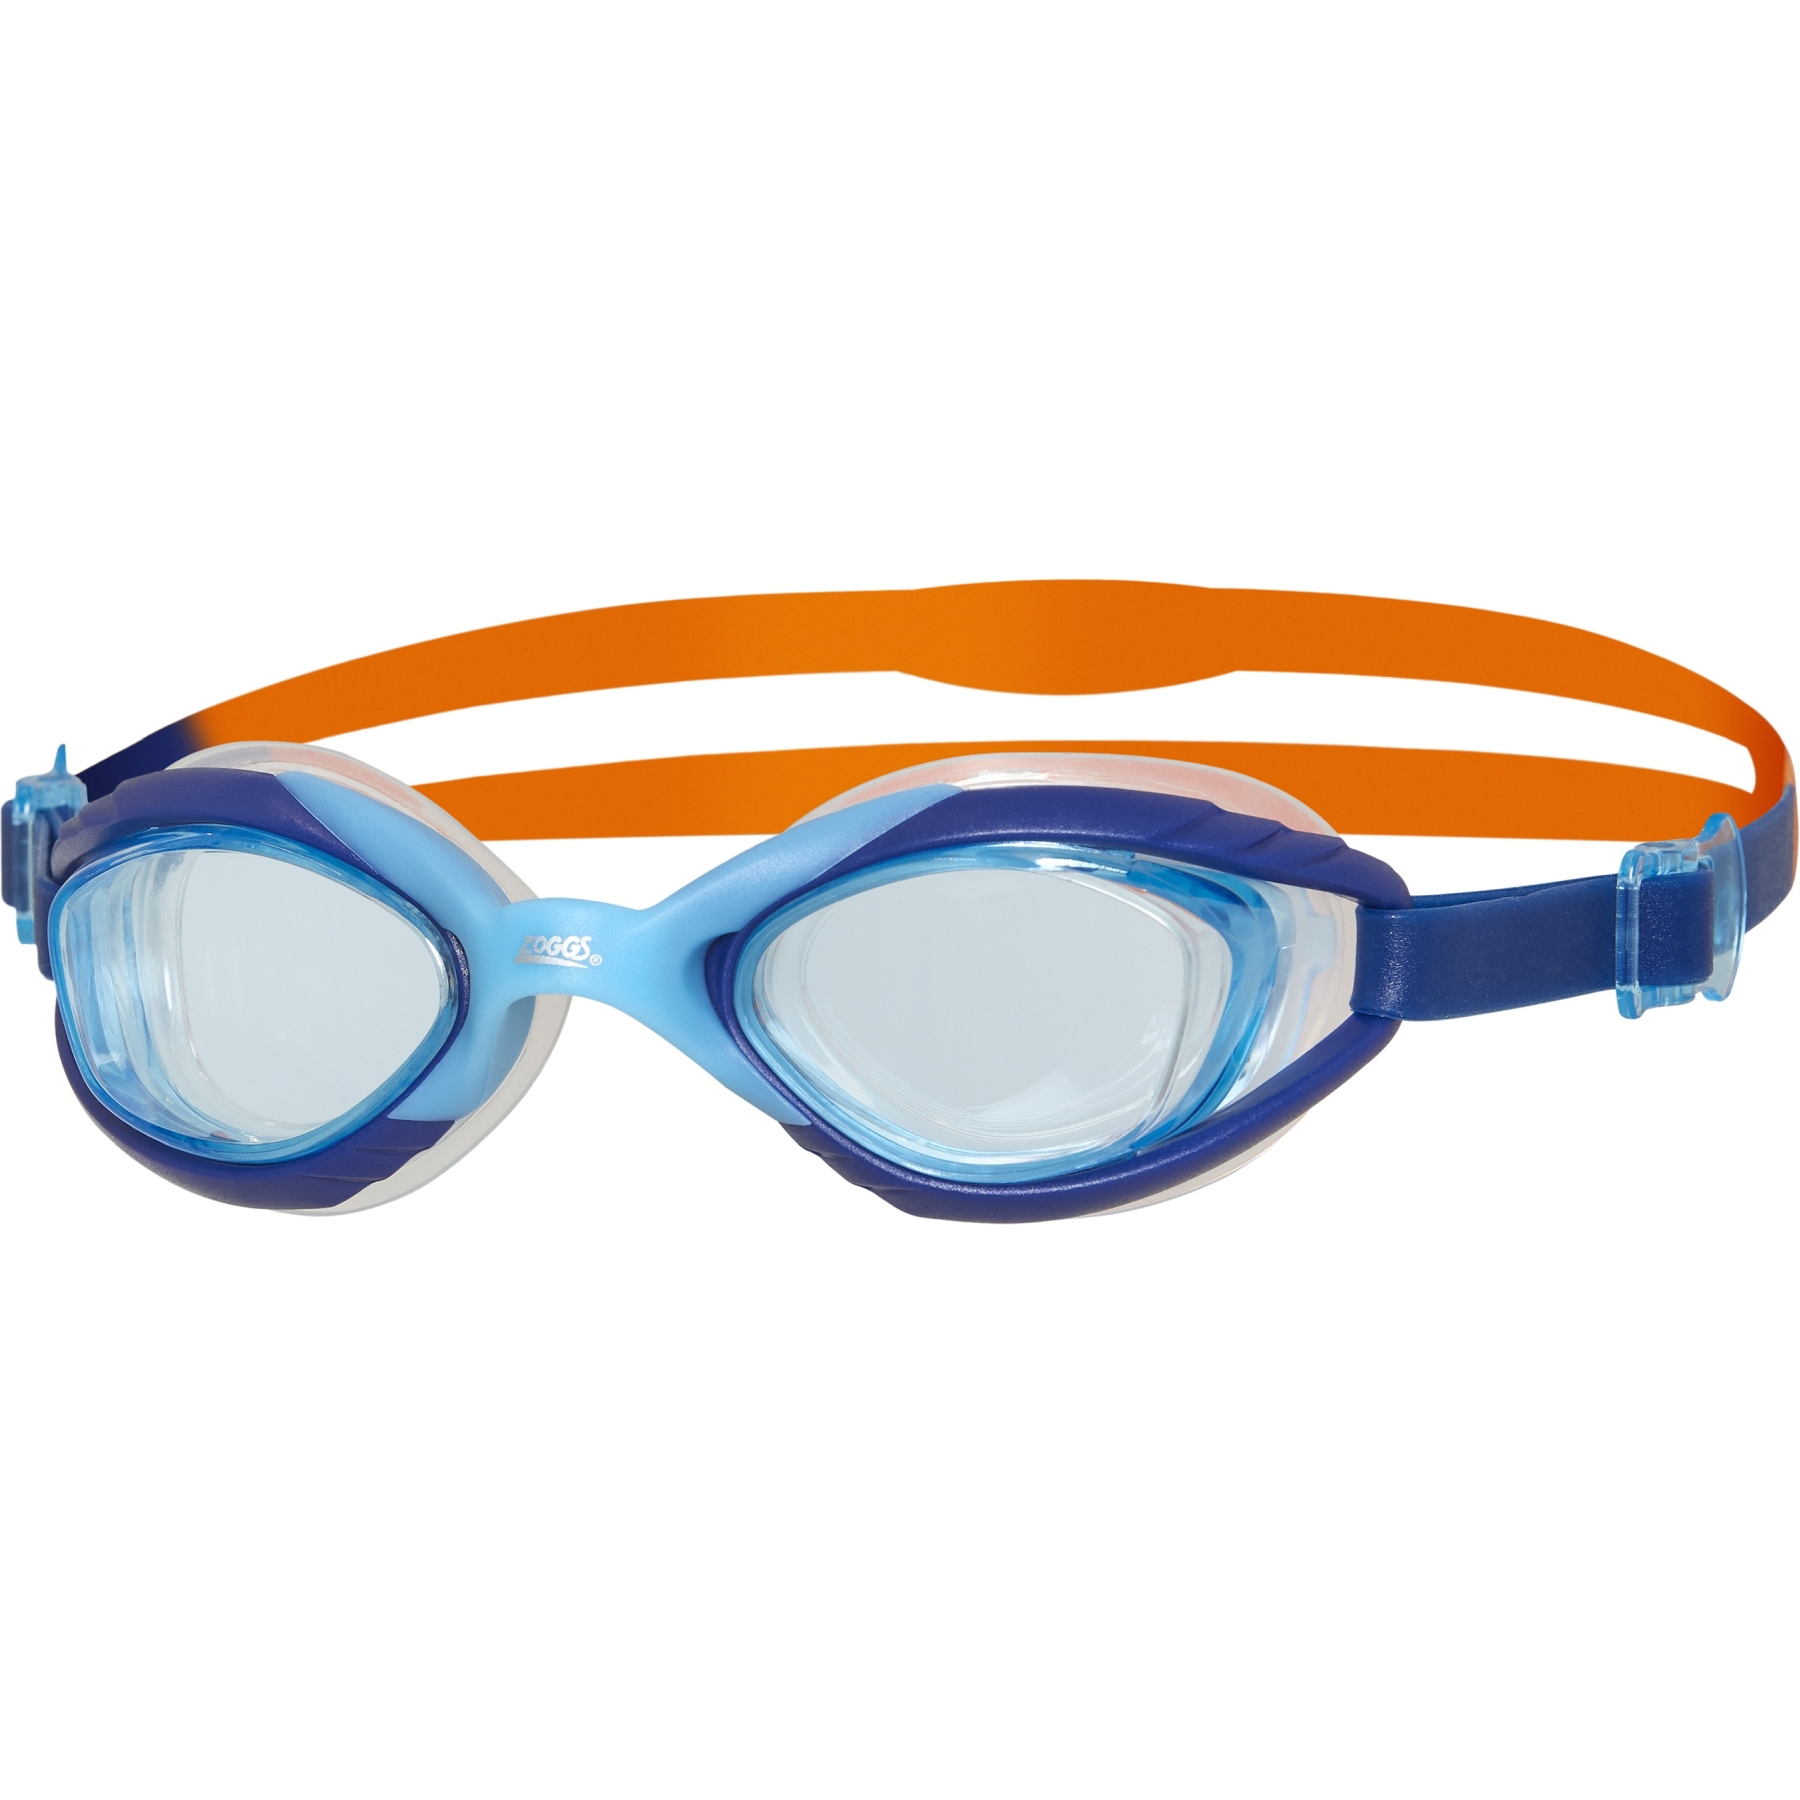 Produktbild von Zoggs Sonic Air Junior 2.0 Kinder Schwimmbrille - Blue/Orange/Tint